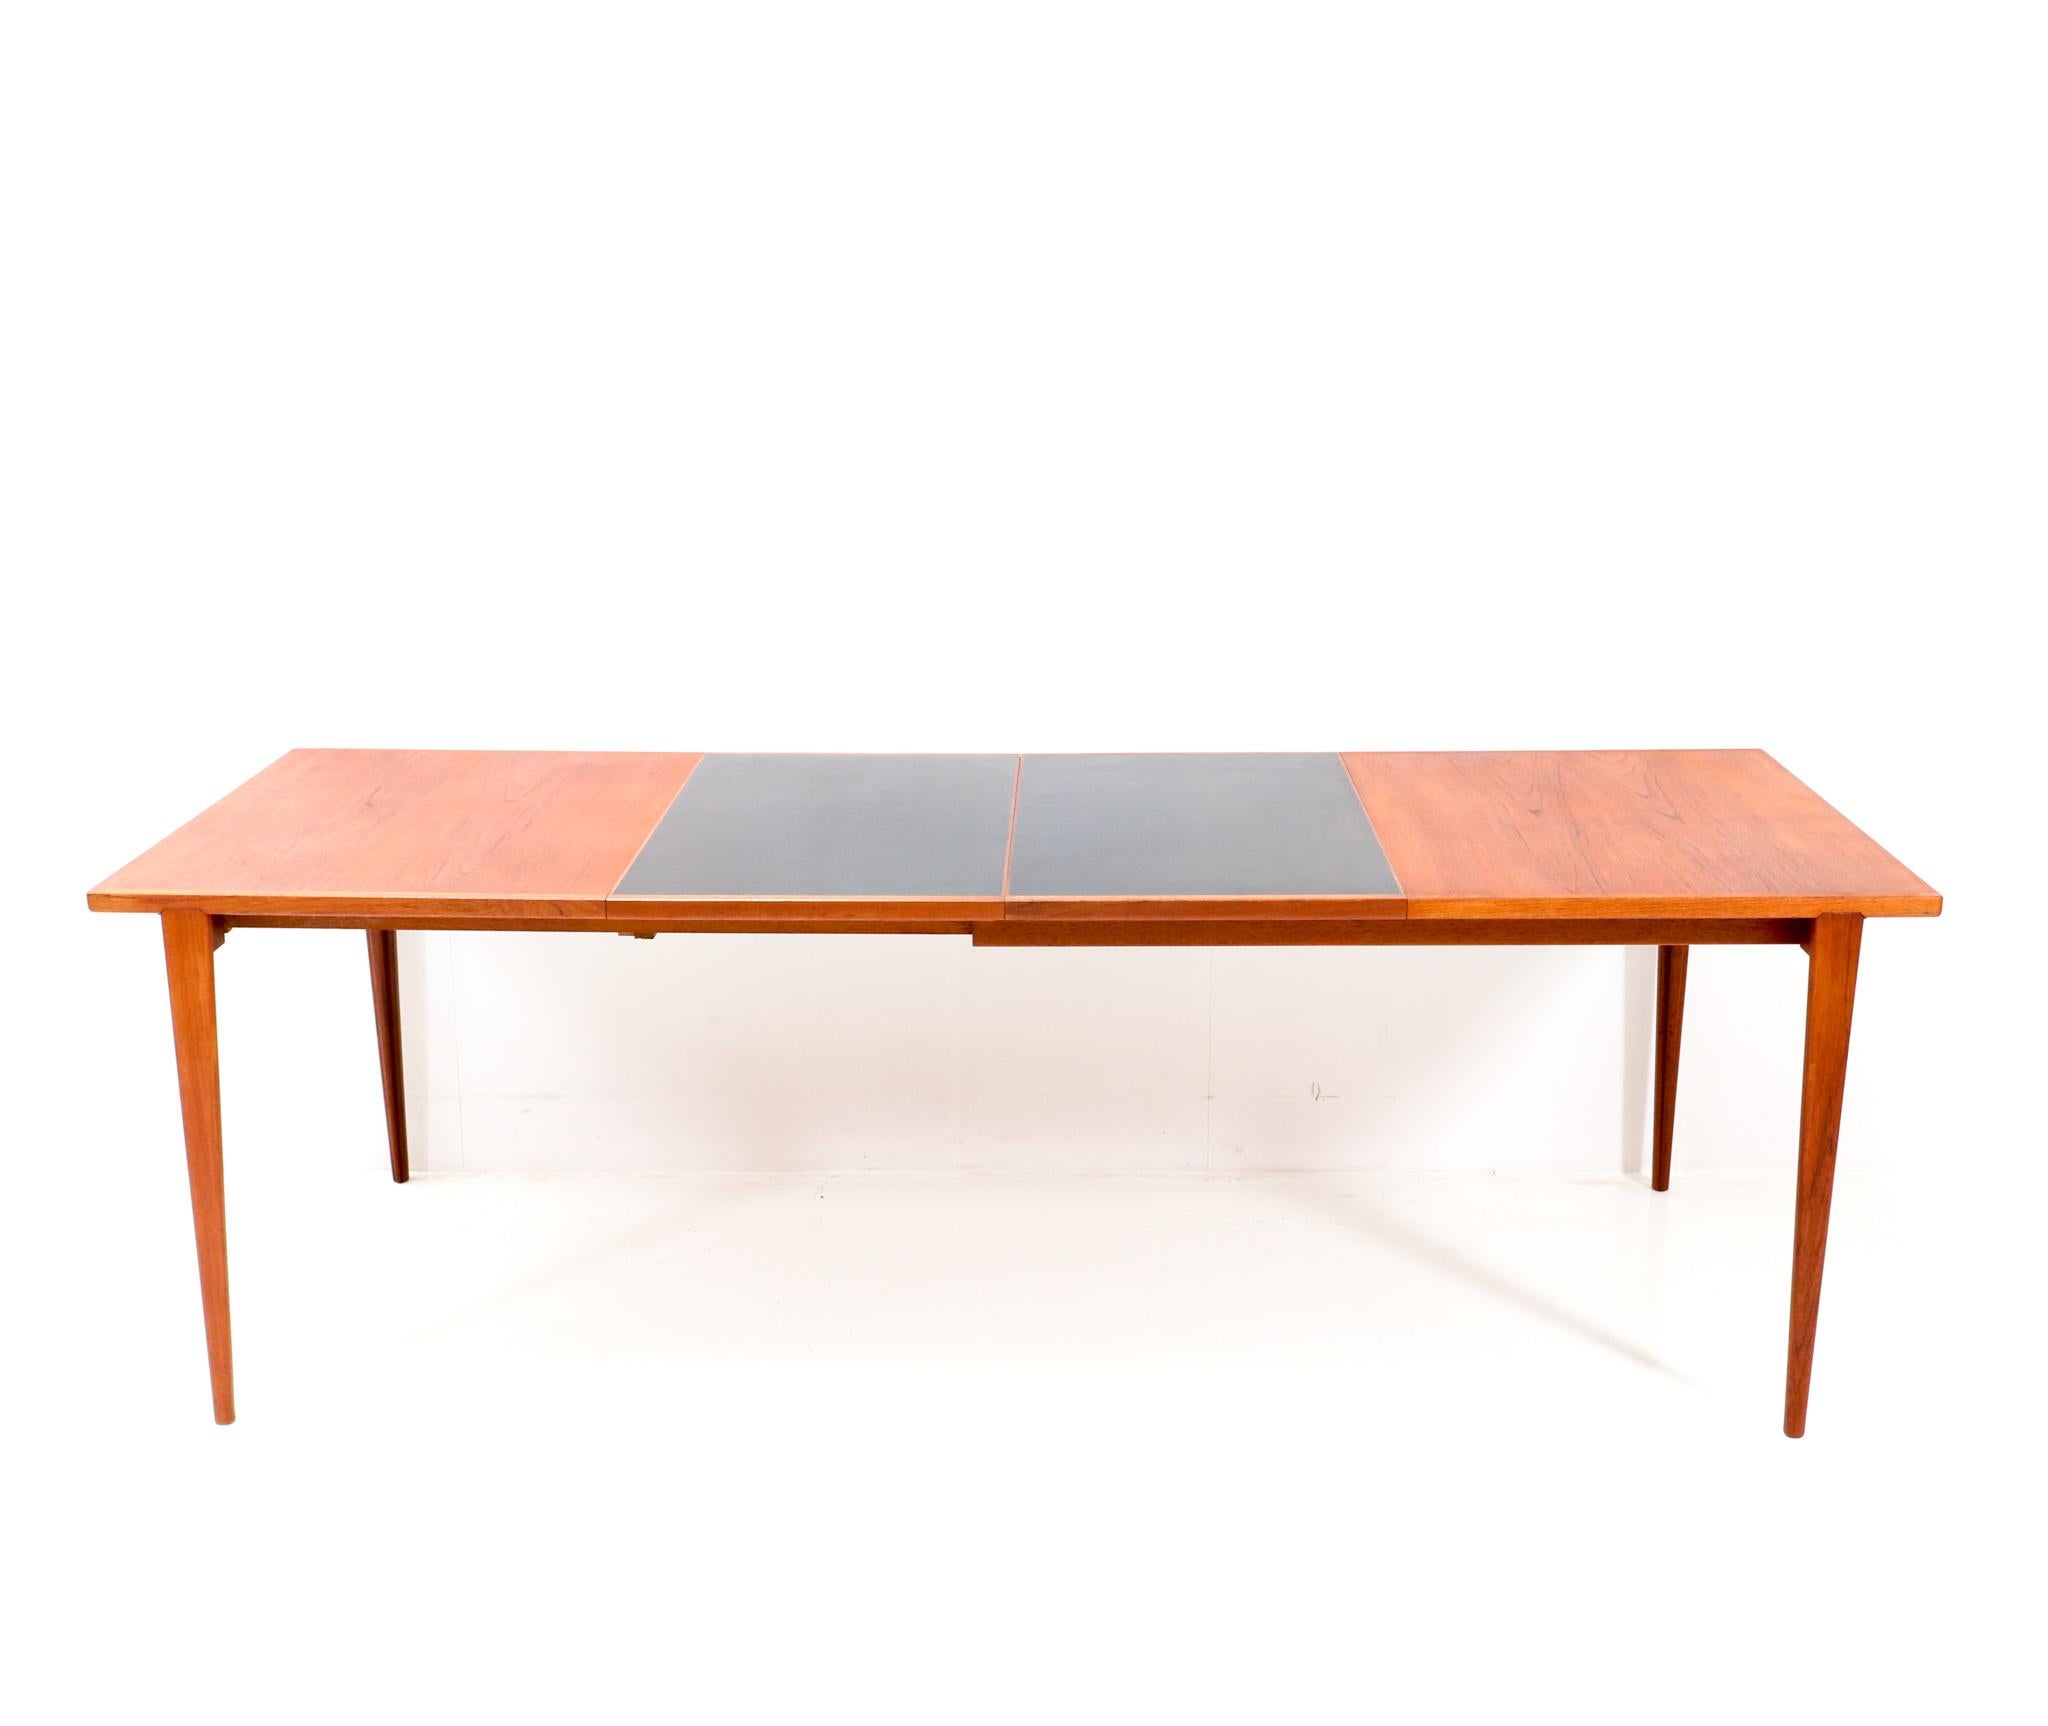 Mid-20th Century Mid-Century Modern Teak Dining Room Table by Henry Rosengren Hansen, 1960s For Sale